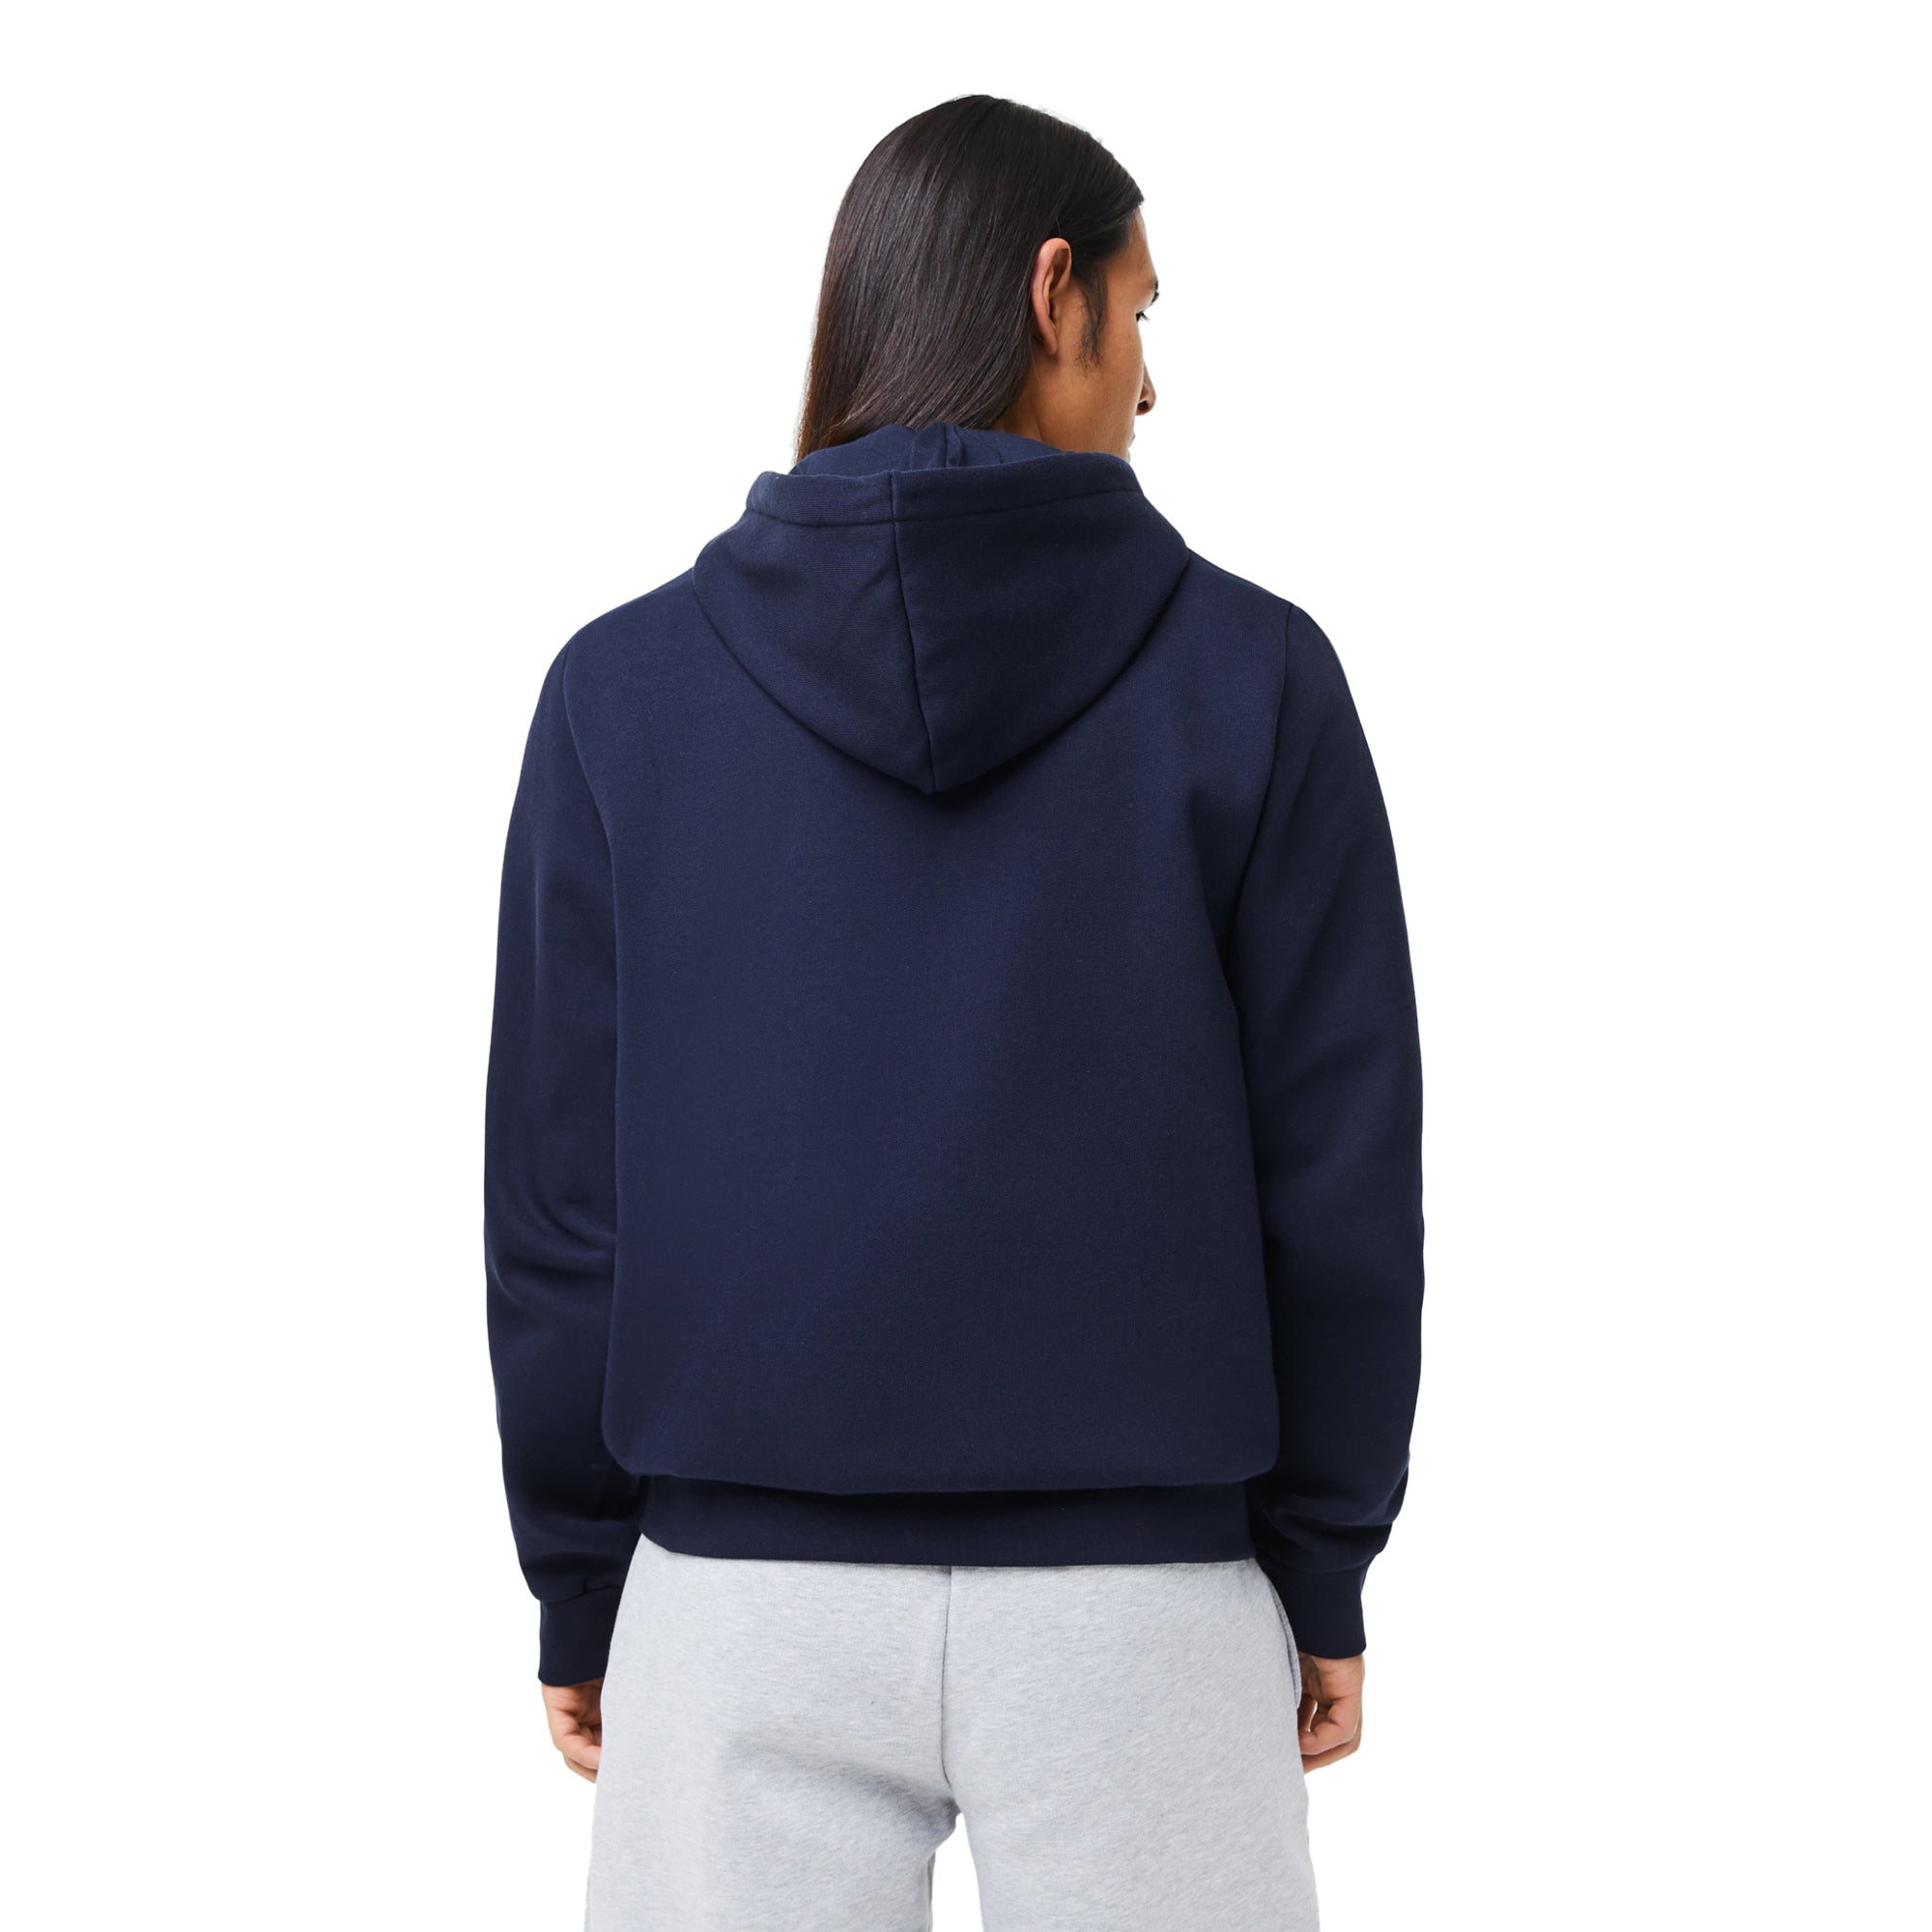 Lacoste Mens Kangaroo Pocket Fleece Zipped Sweatshirt